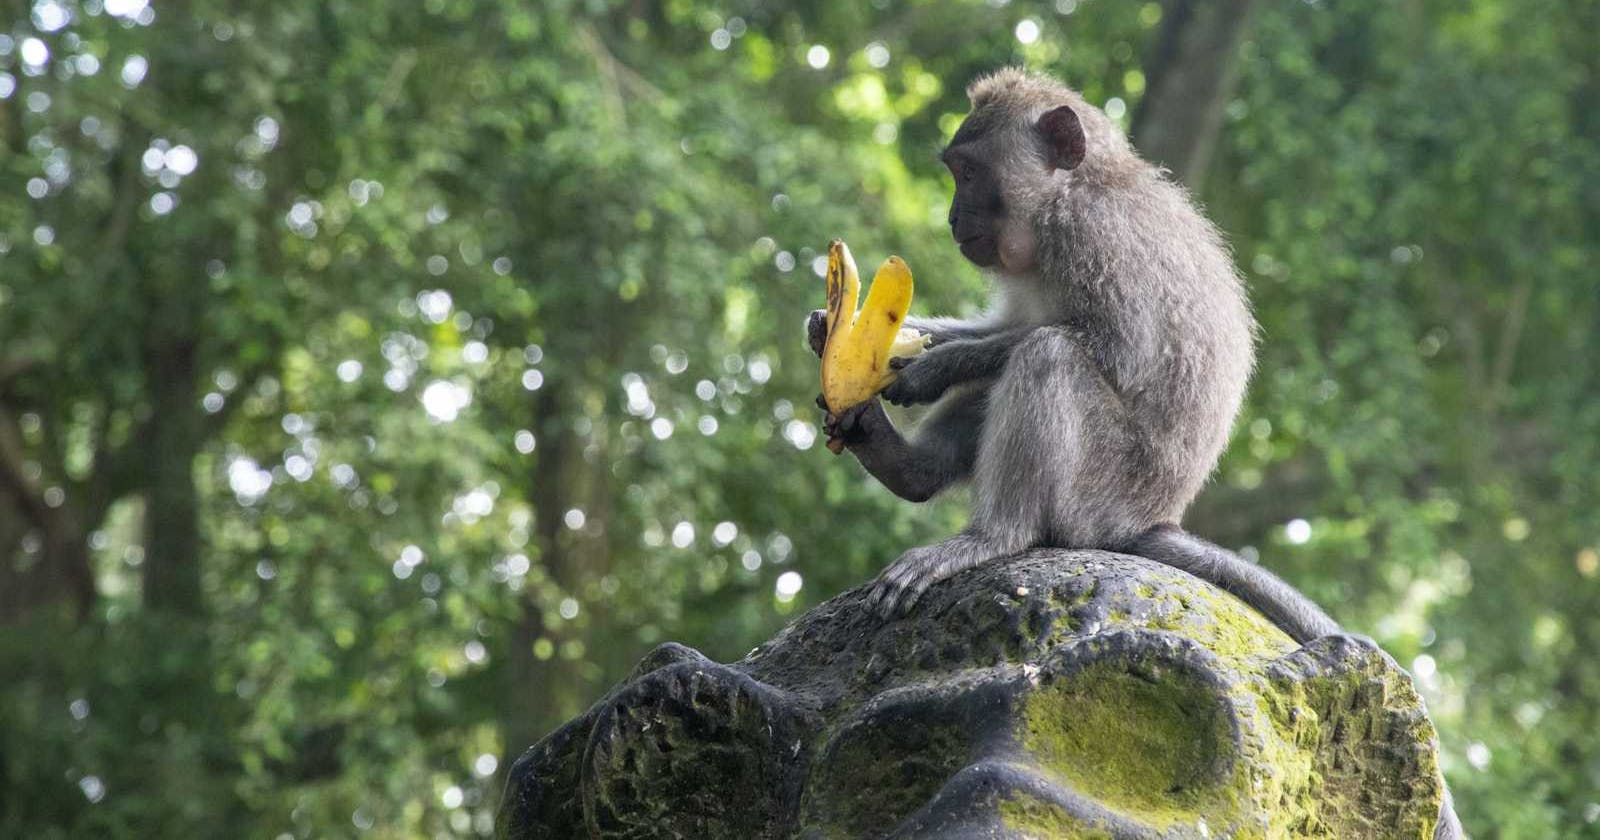 Koko Eating Bananas